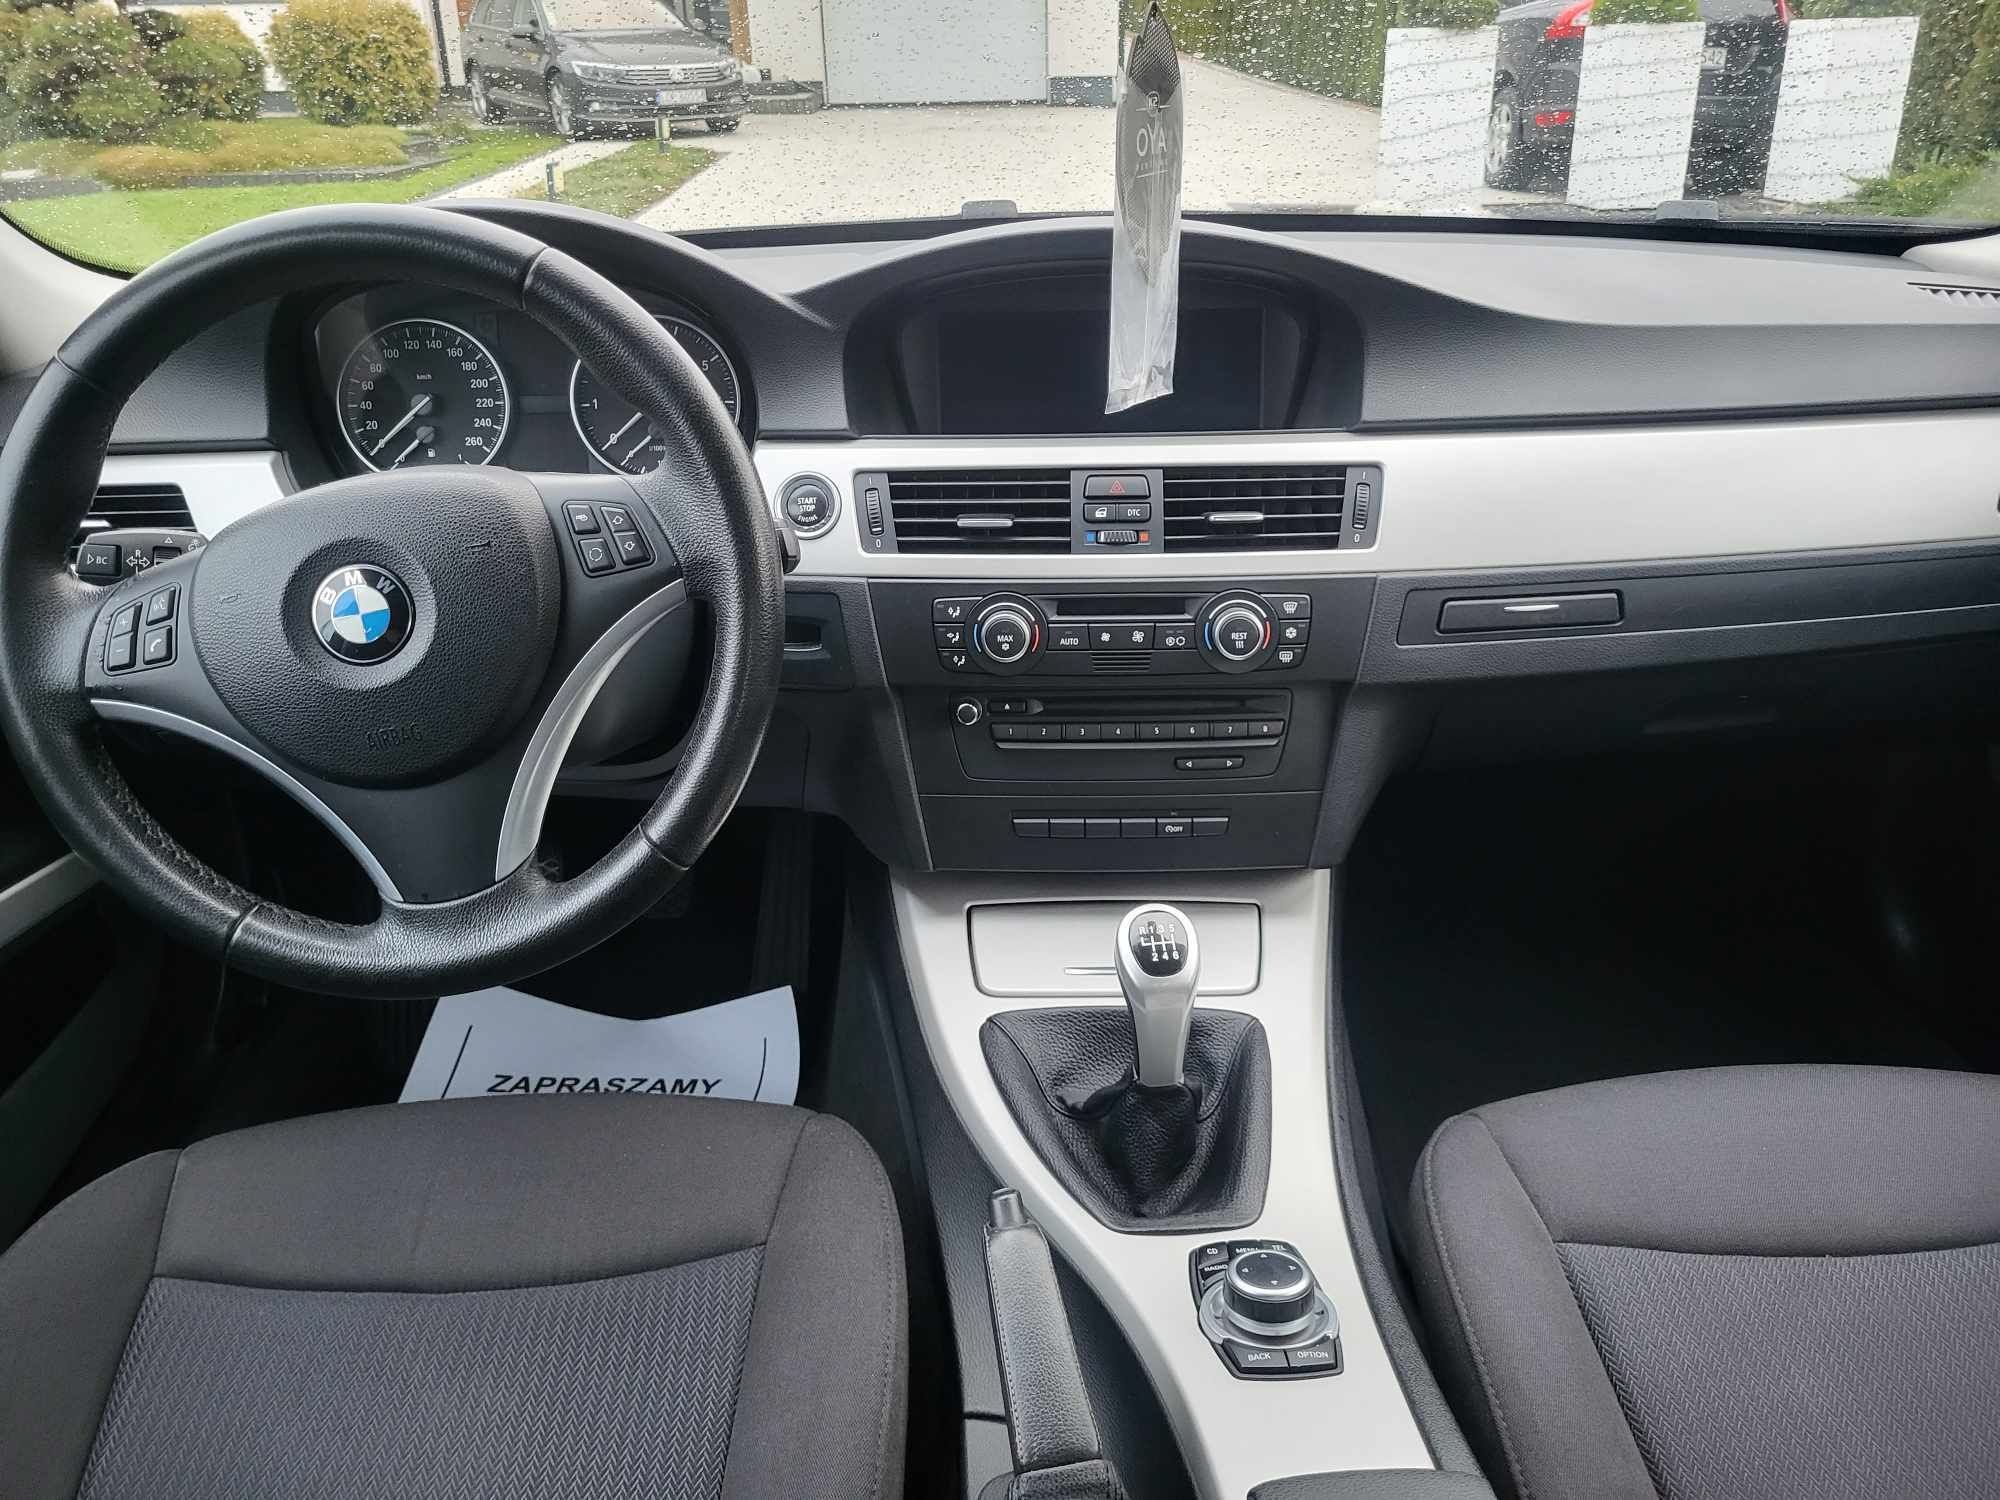 BMW E90 Lift 3.0 M54 Cic